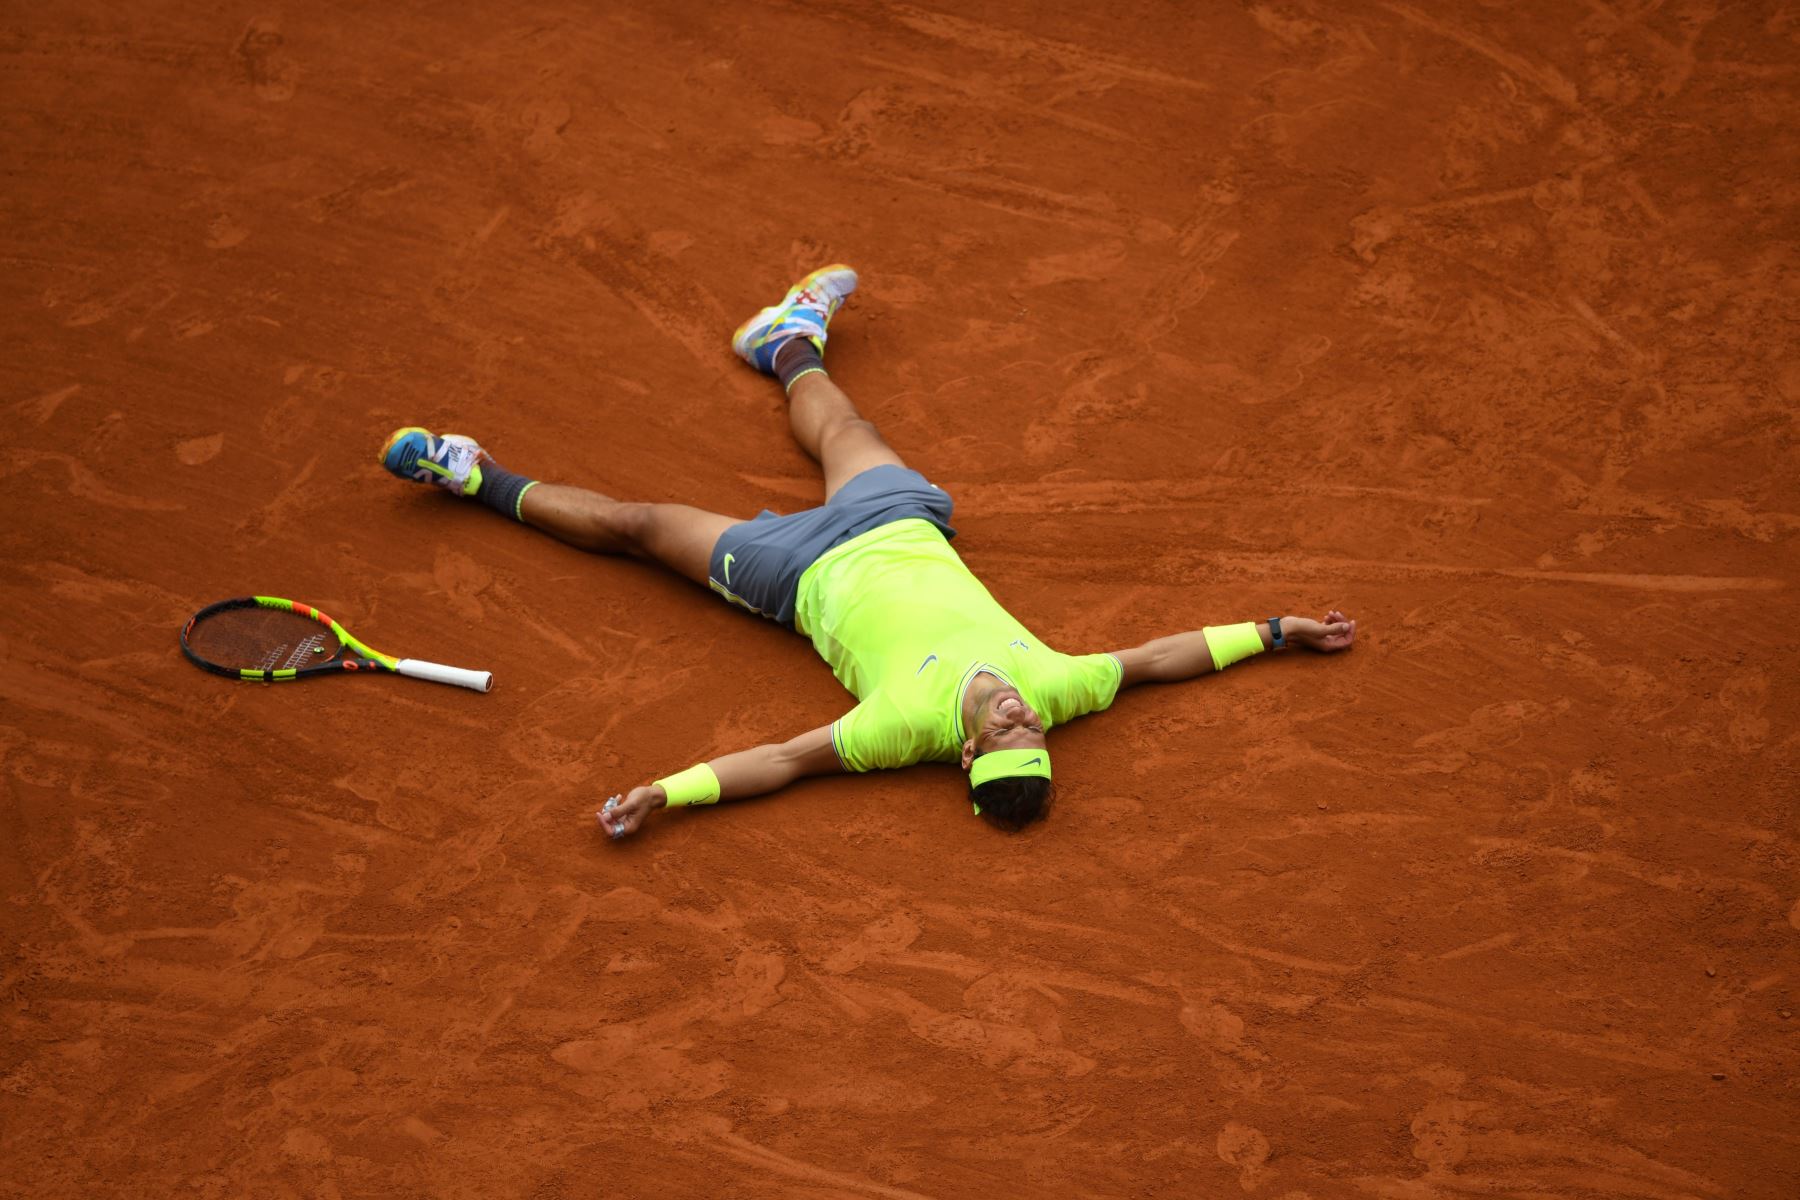 El español Rafael Nadal celebra después de ganar contra el dominic Thiem de Austria durante su último partido individual de hombres del torneo de tenis Roland Garros 2019.
Foto:AFP